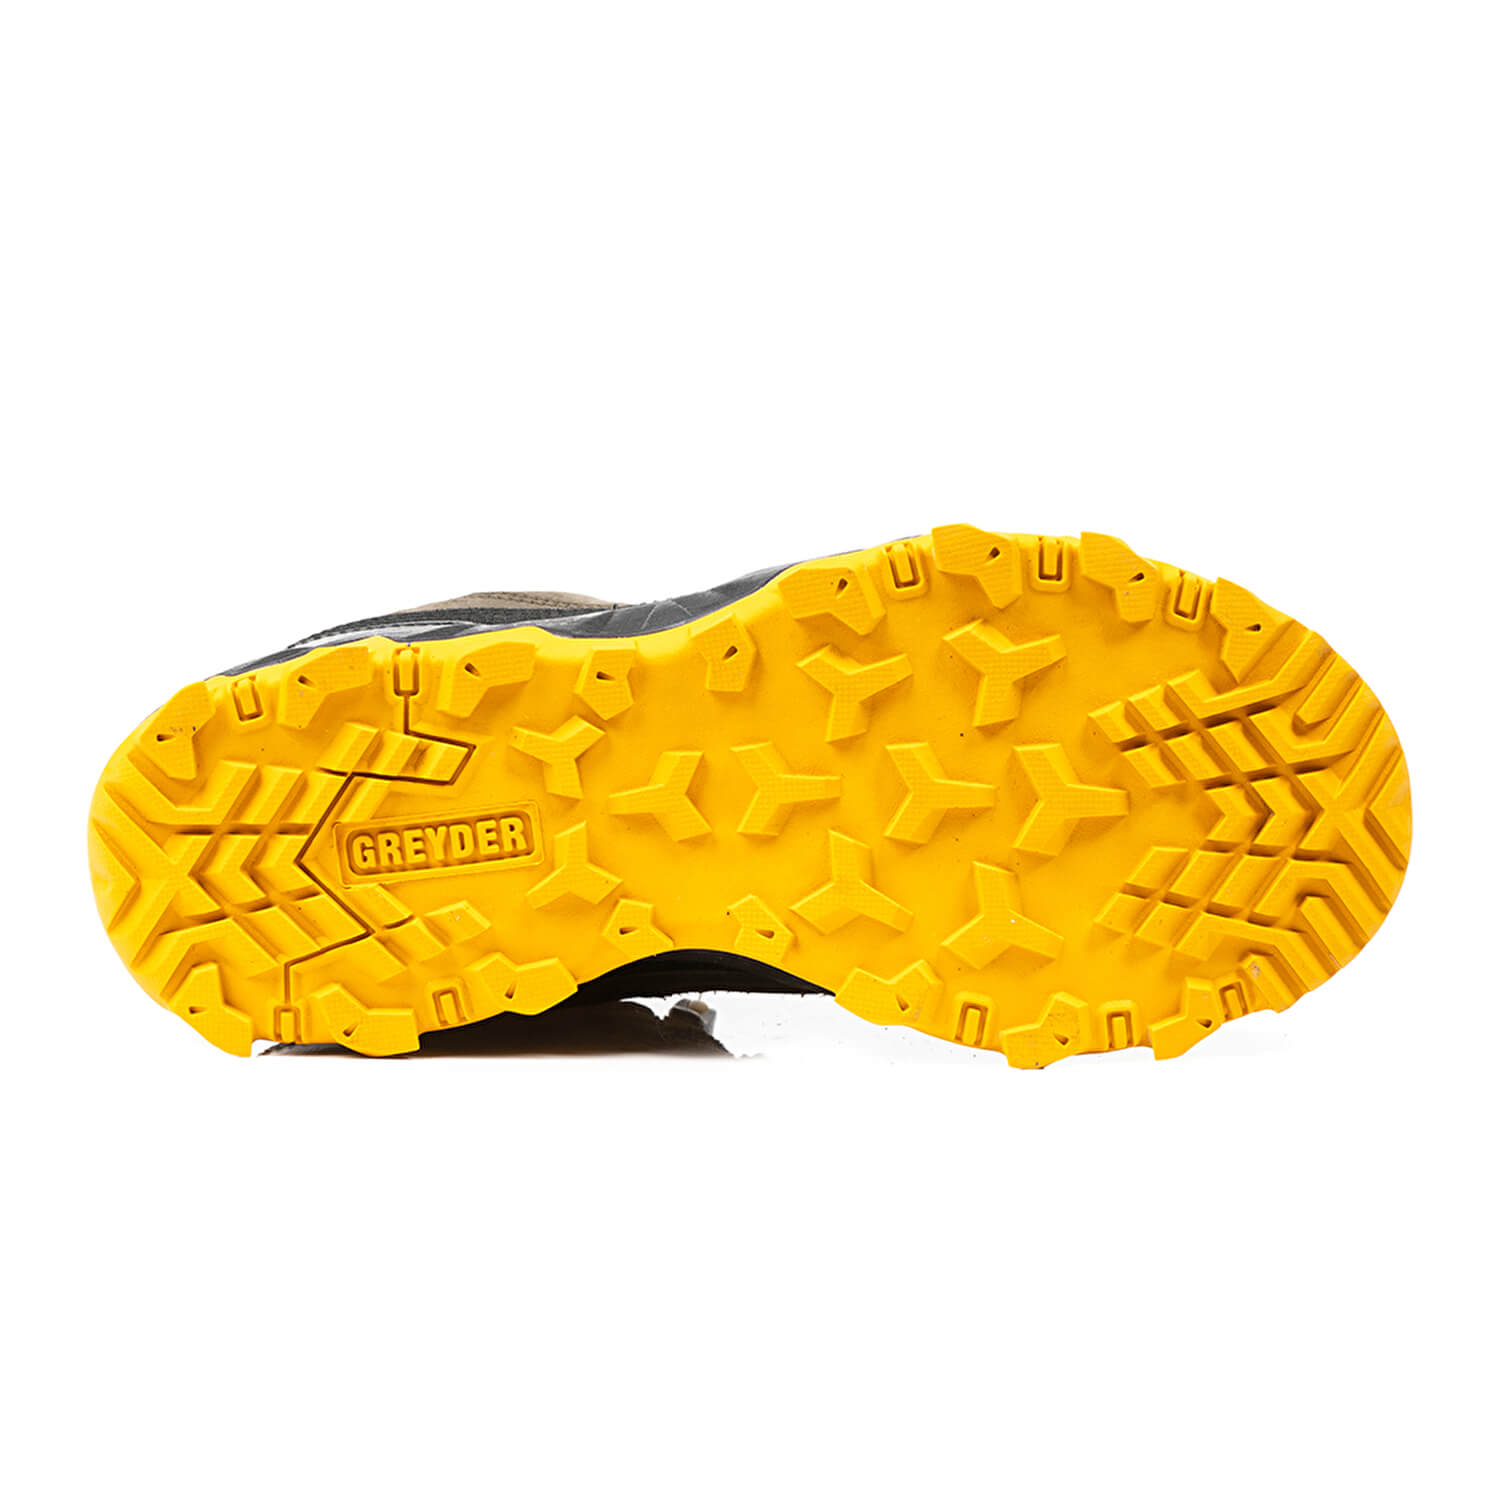 Kadın Haki Sarı Su Geçirmez Ayakkabı 1K2GA00182-6